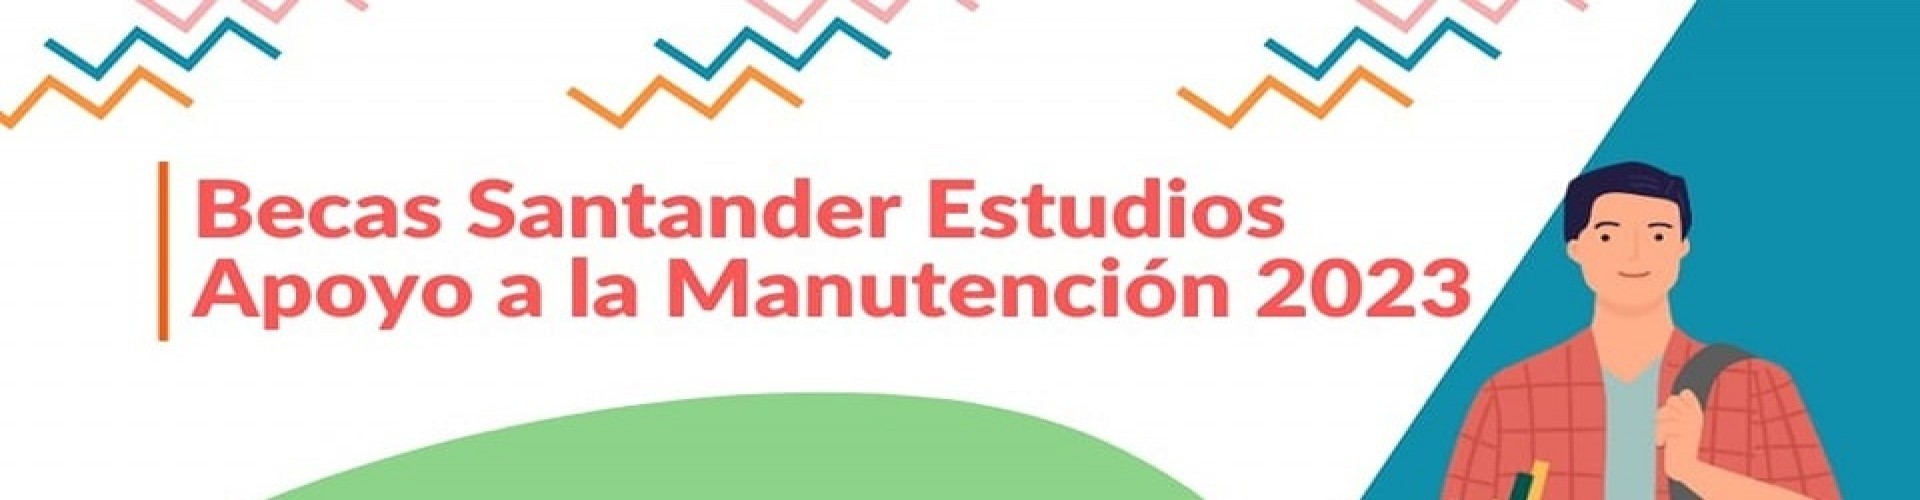 Becas Santander Apoyo a la Manutención 2023